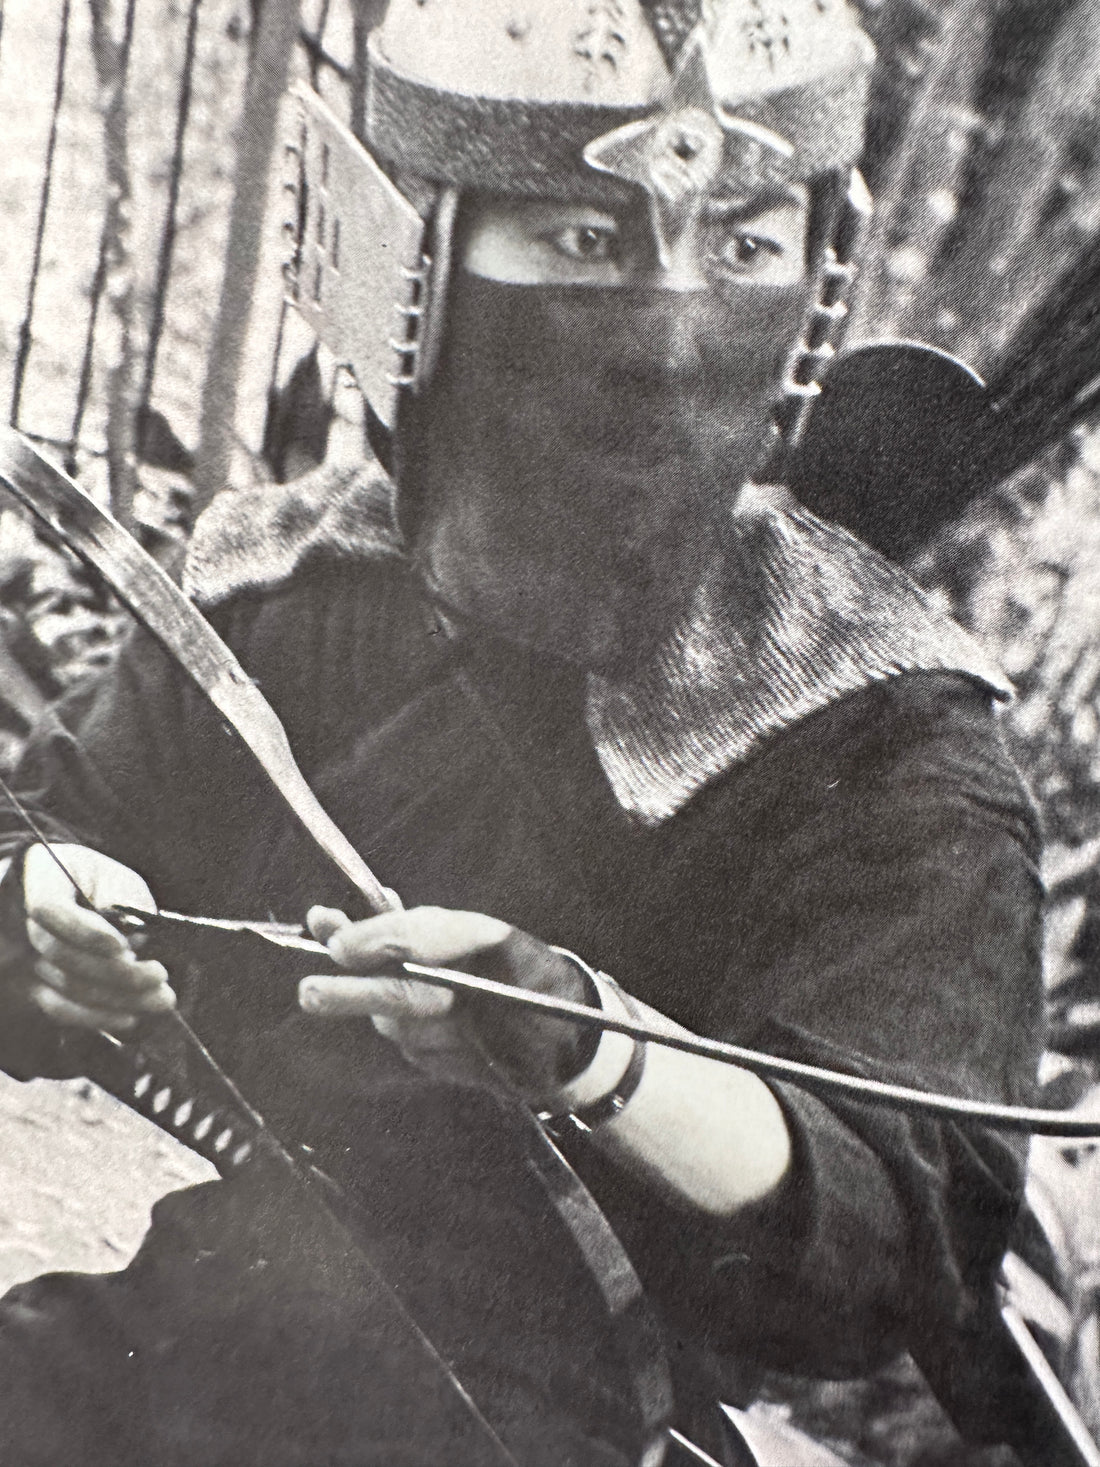 Sho Kosugi Autographed "INSIDE KUNG FU" October 1985 VG